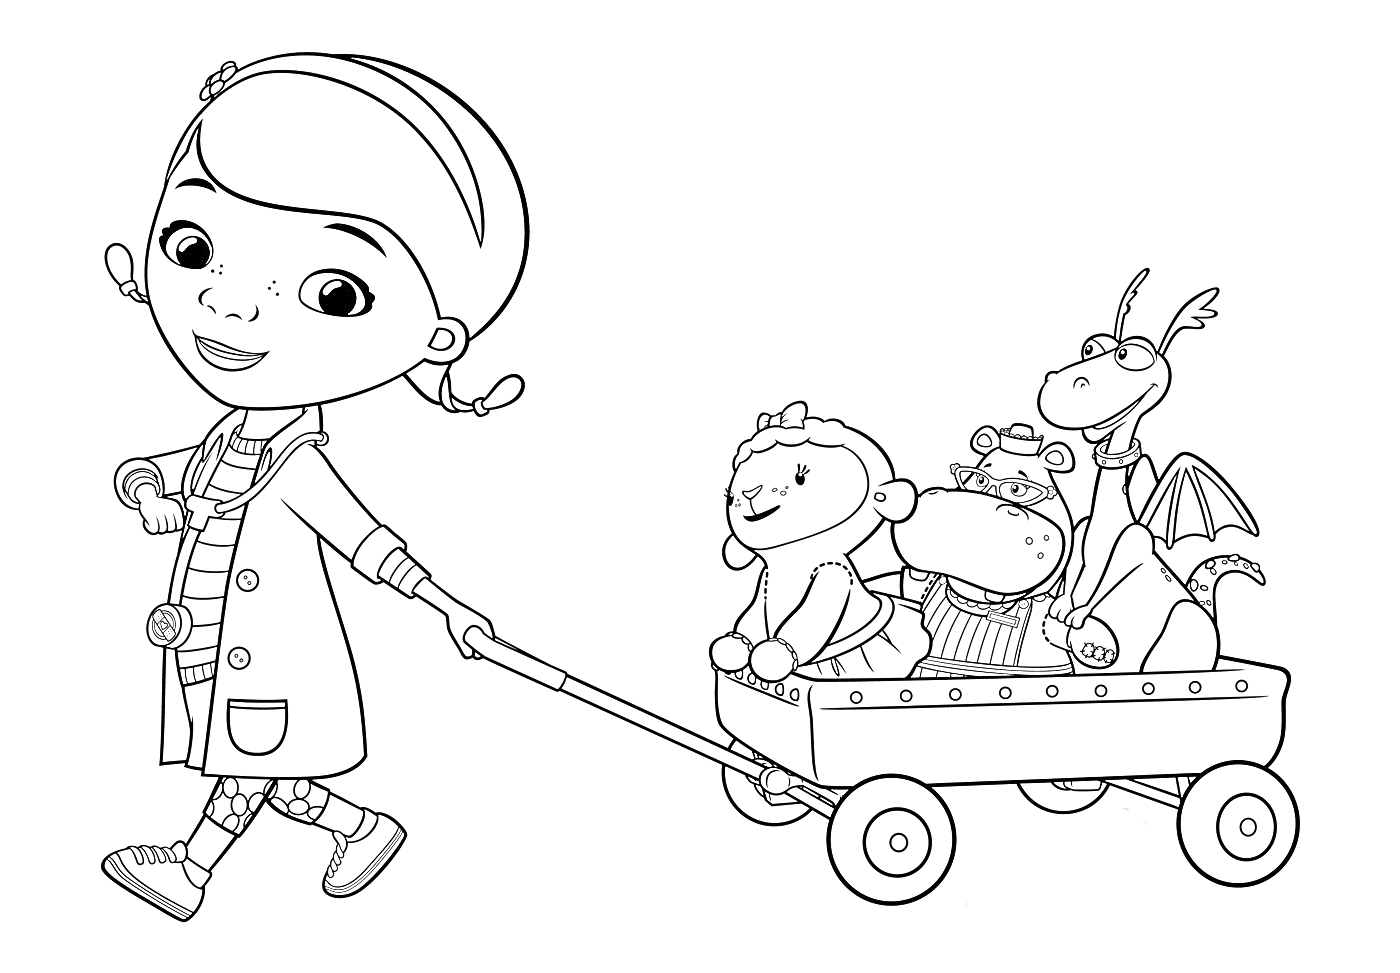 Доктор Плюшева в халате тянет вагончик с игрушечными друзьями (ягнёнок, бегемот, дракон и ещё одна игрушка)